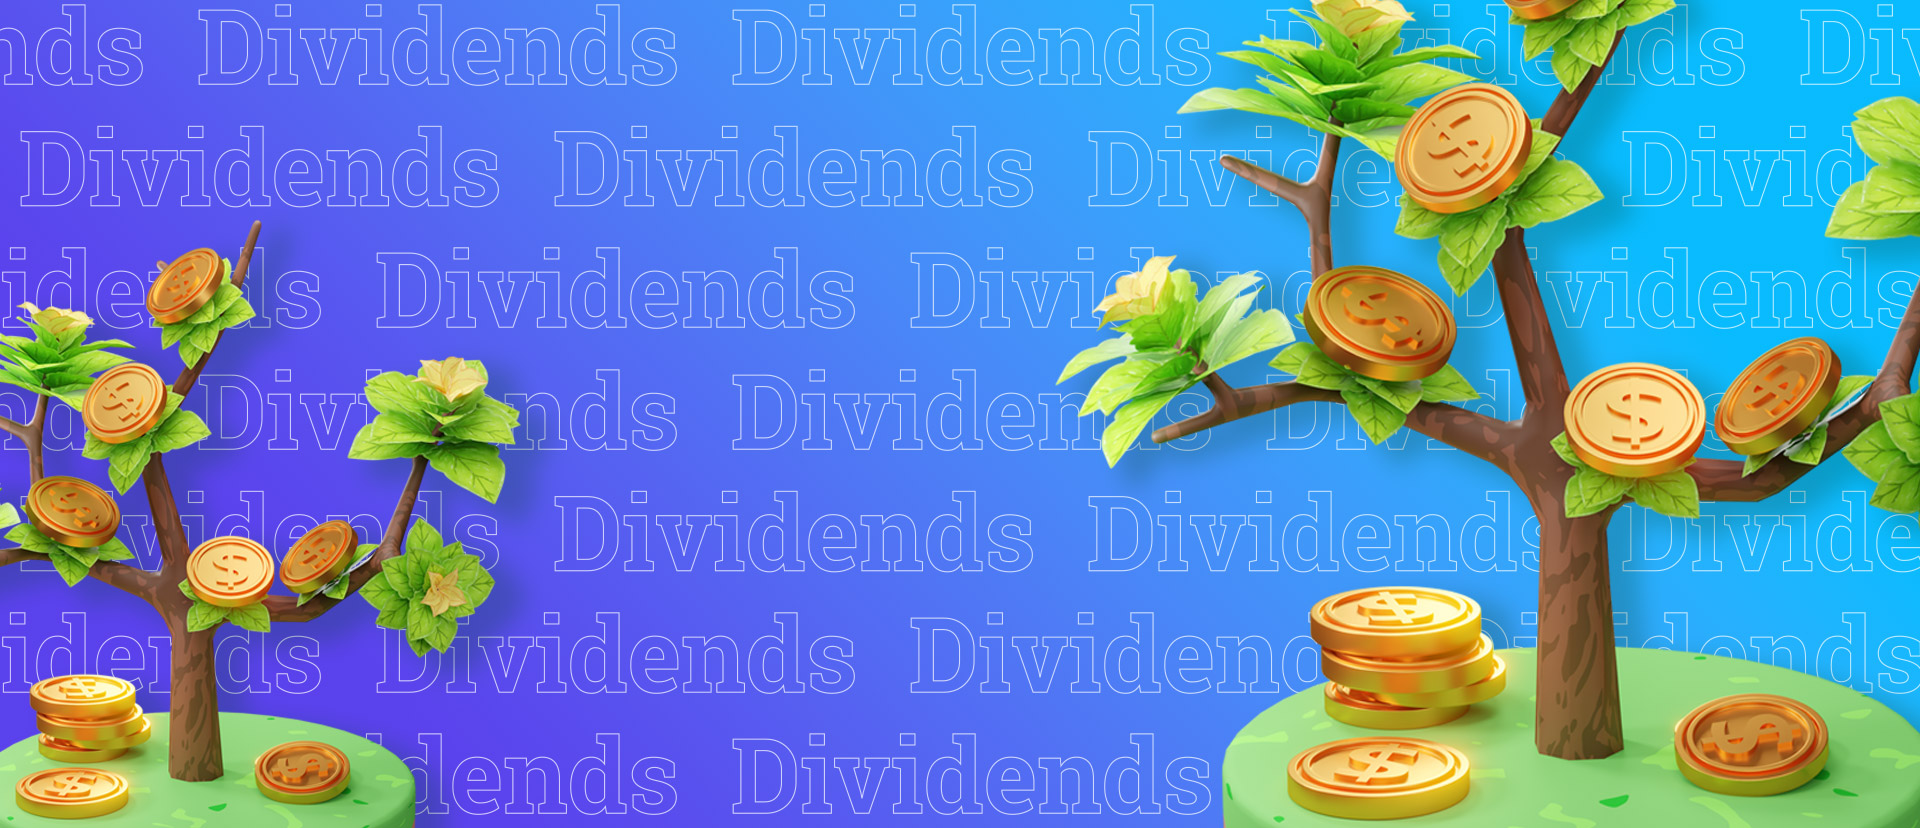 3 aktsiat, mille dividendid on üle 6%